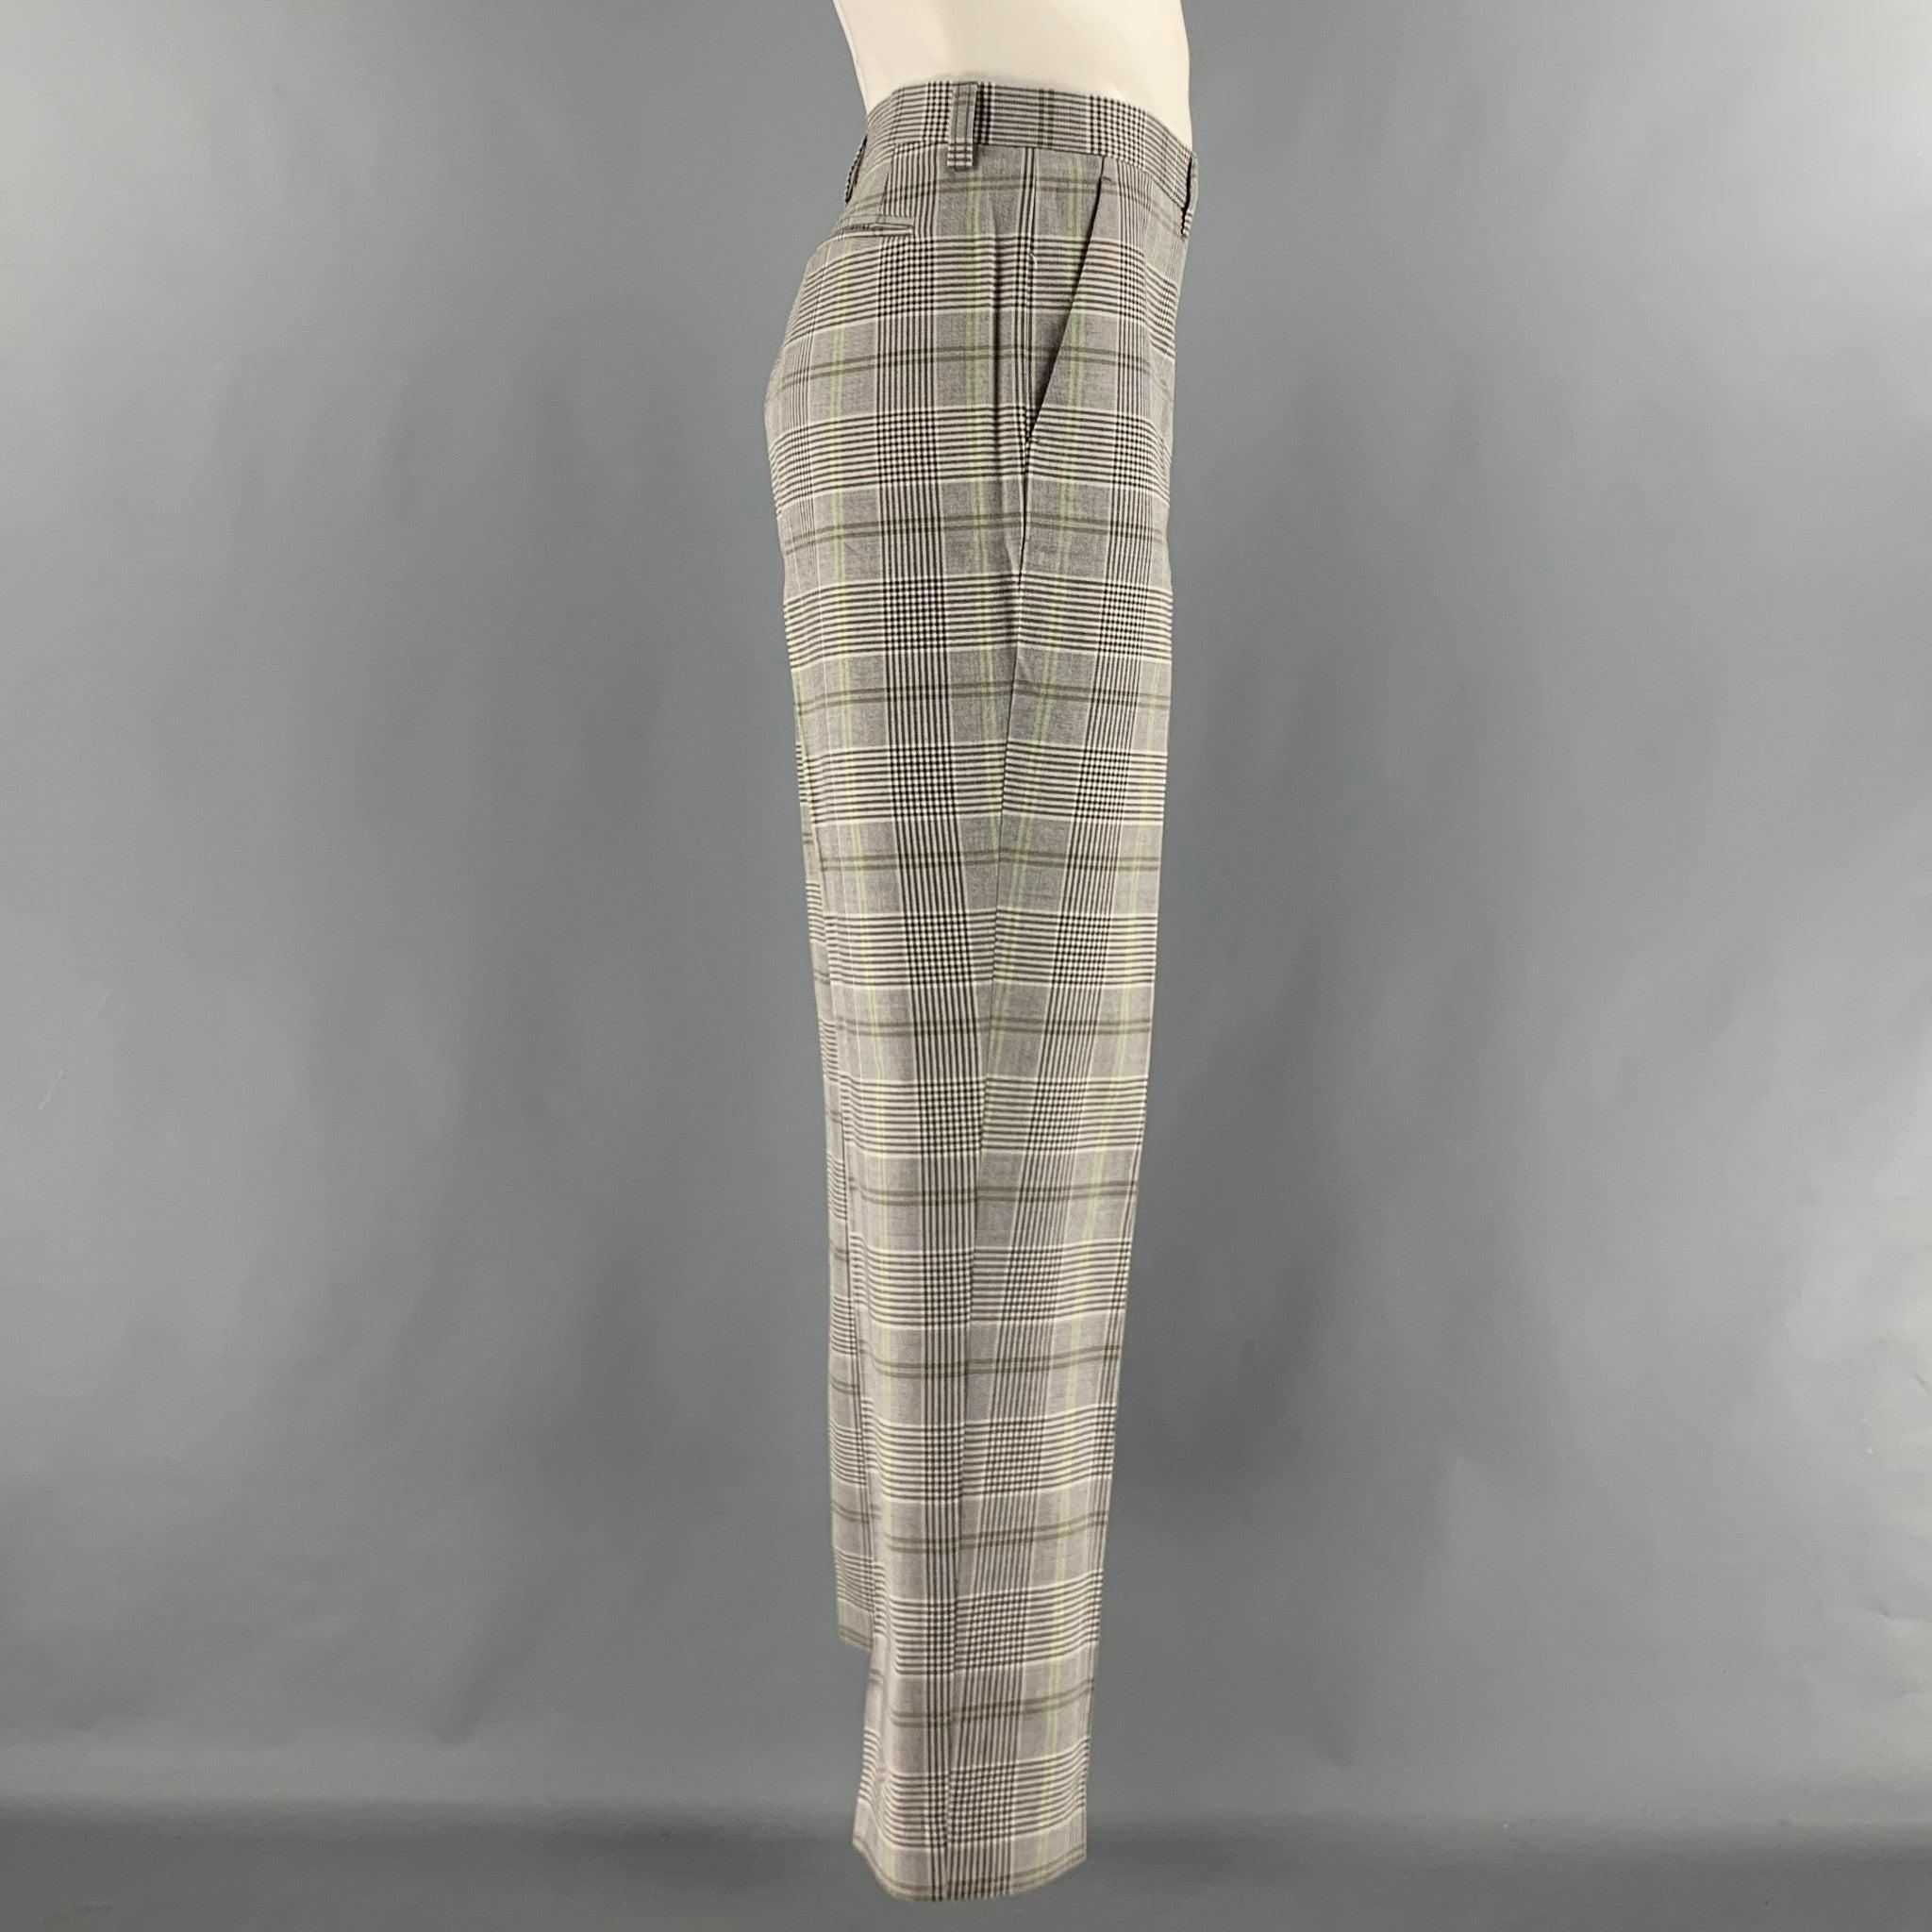 Le pantalon habillé ETRO est en laine tissée à carreaux noirs, blancs et verts. Il présente un devant plat, une coupe régulière, des poches fendues et une fermeture à glissière. Fabriquées en Italie. Très bon état d'origine. 

Marqué :   52